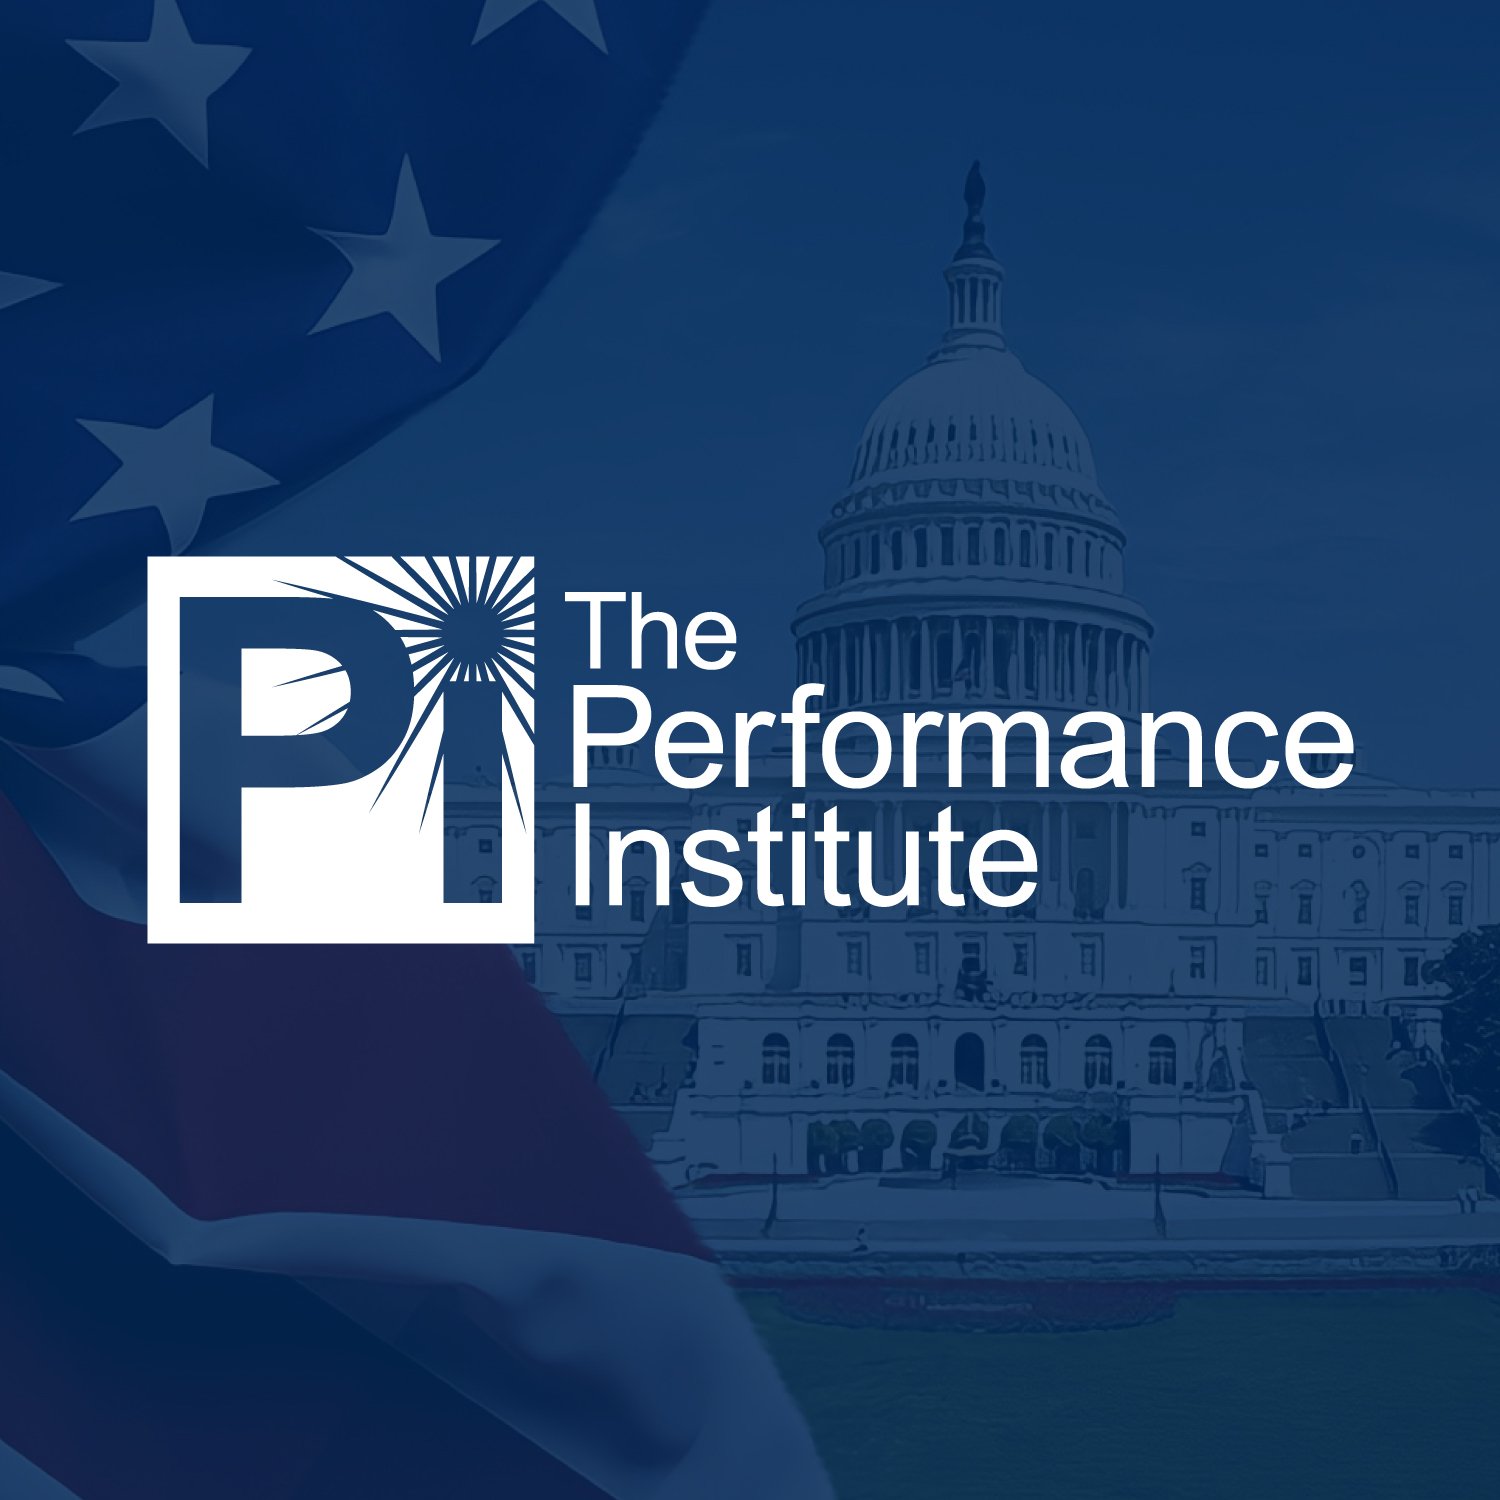 (c) Performanceinstitute.org